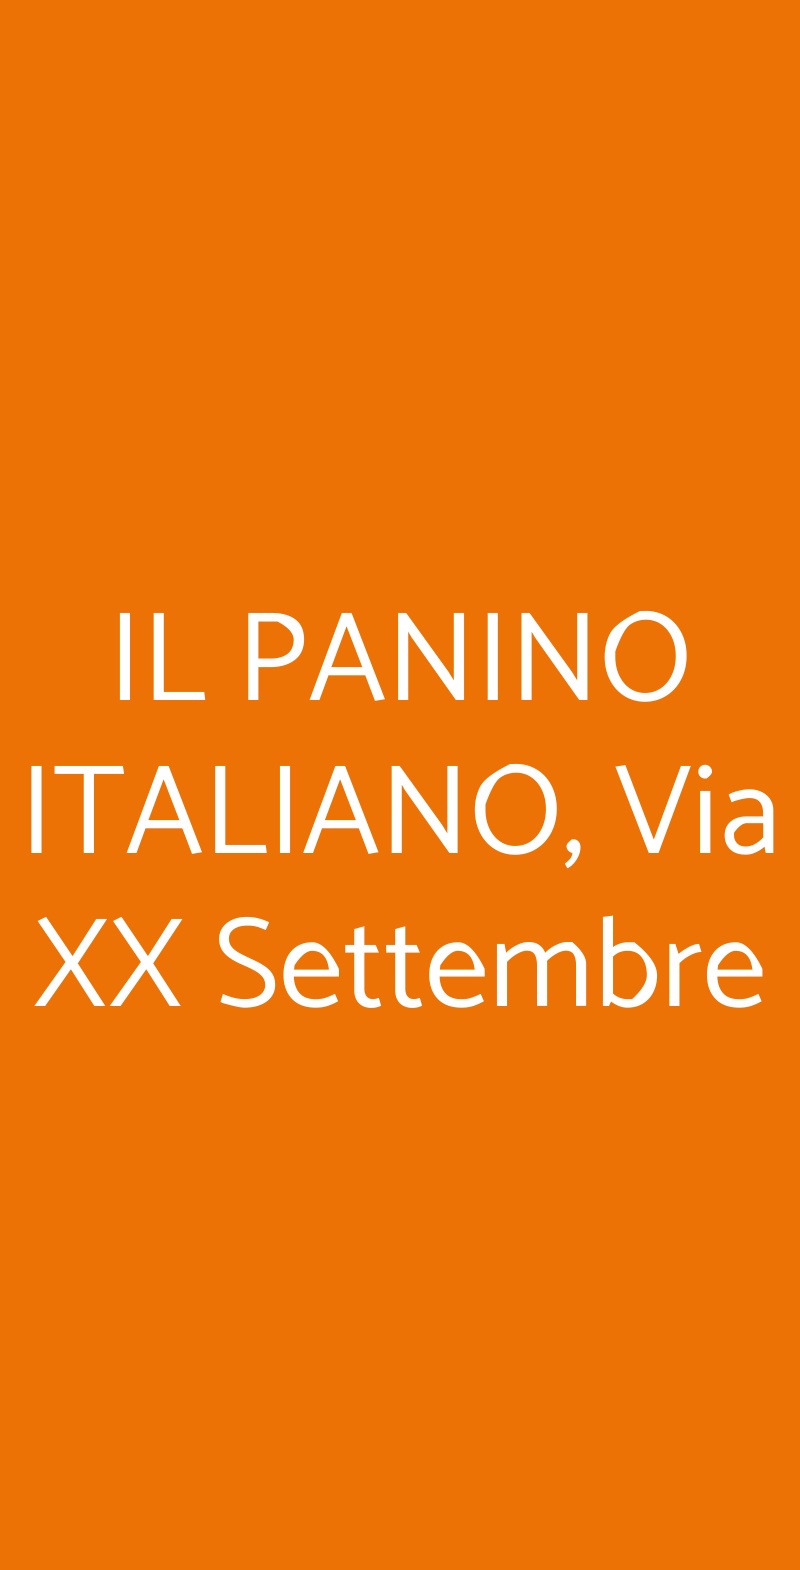 IL PANINO ITALIANO, Via XX Settembre Genova menù 1 pagina